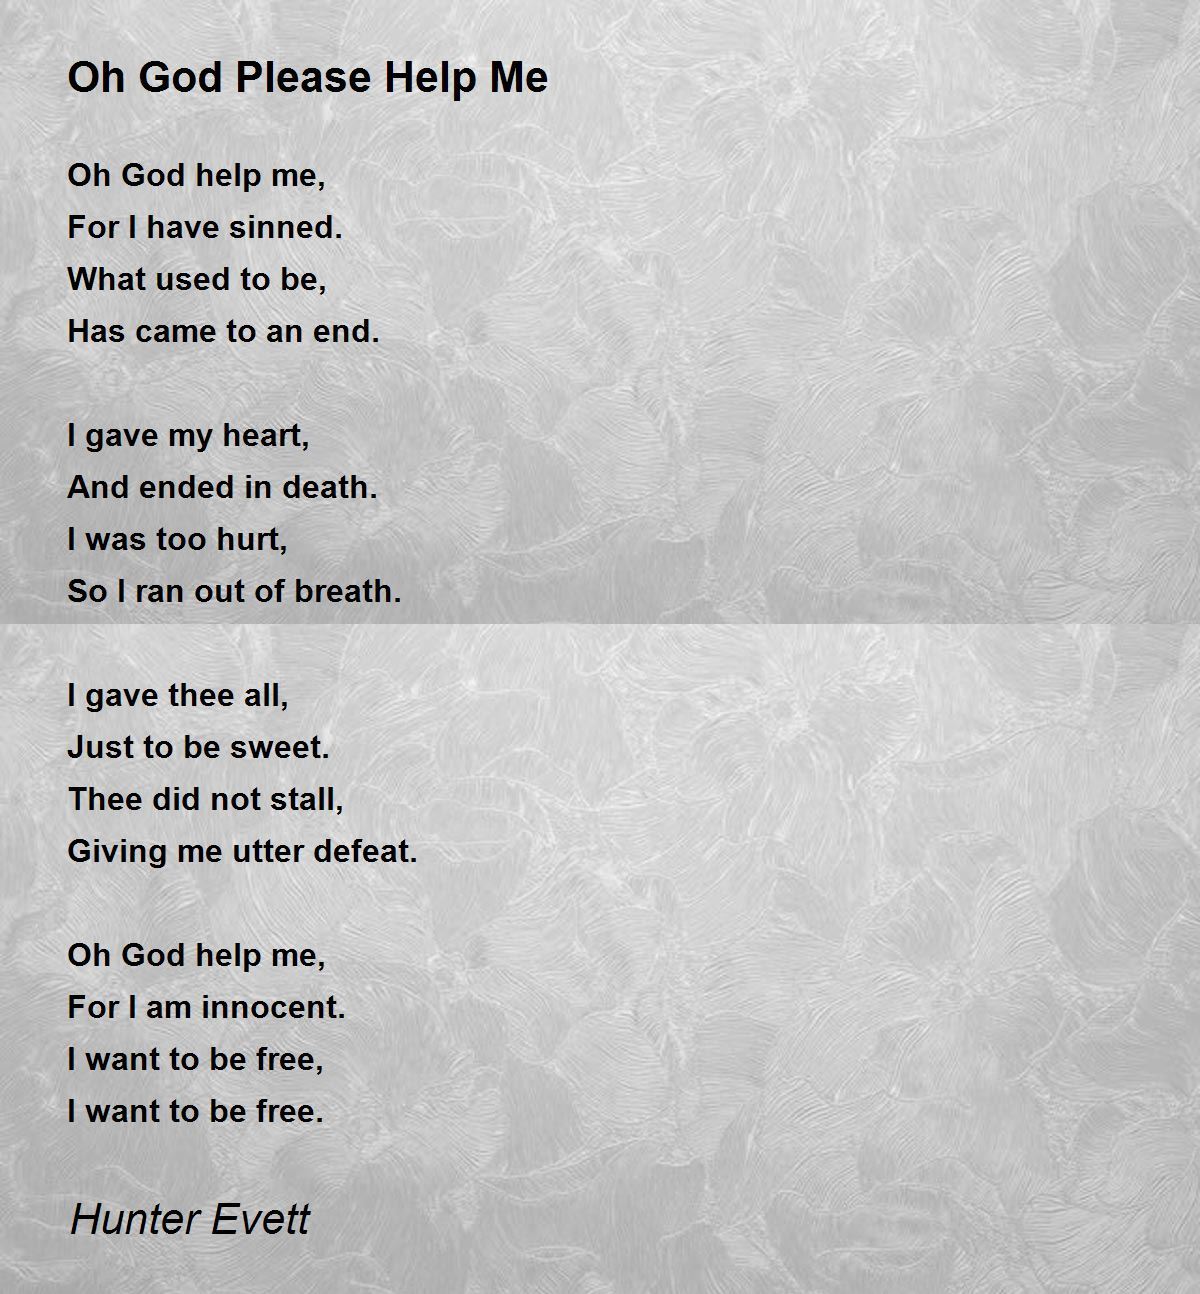 Oh God Please Help Me - Oh God Please Help Me Poem by Hunter Evett